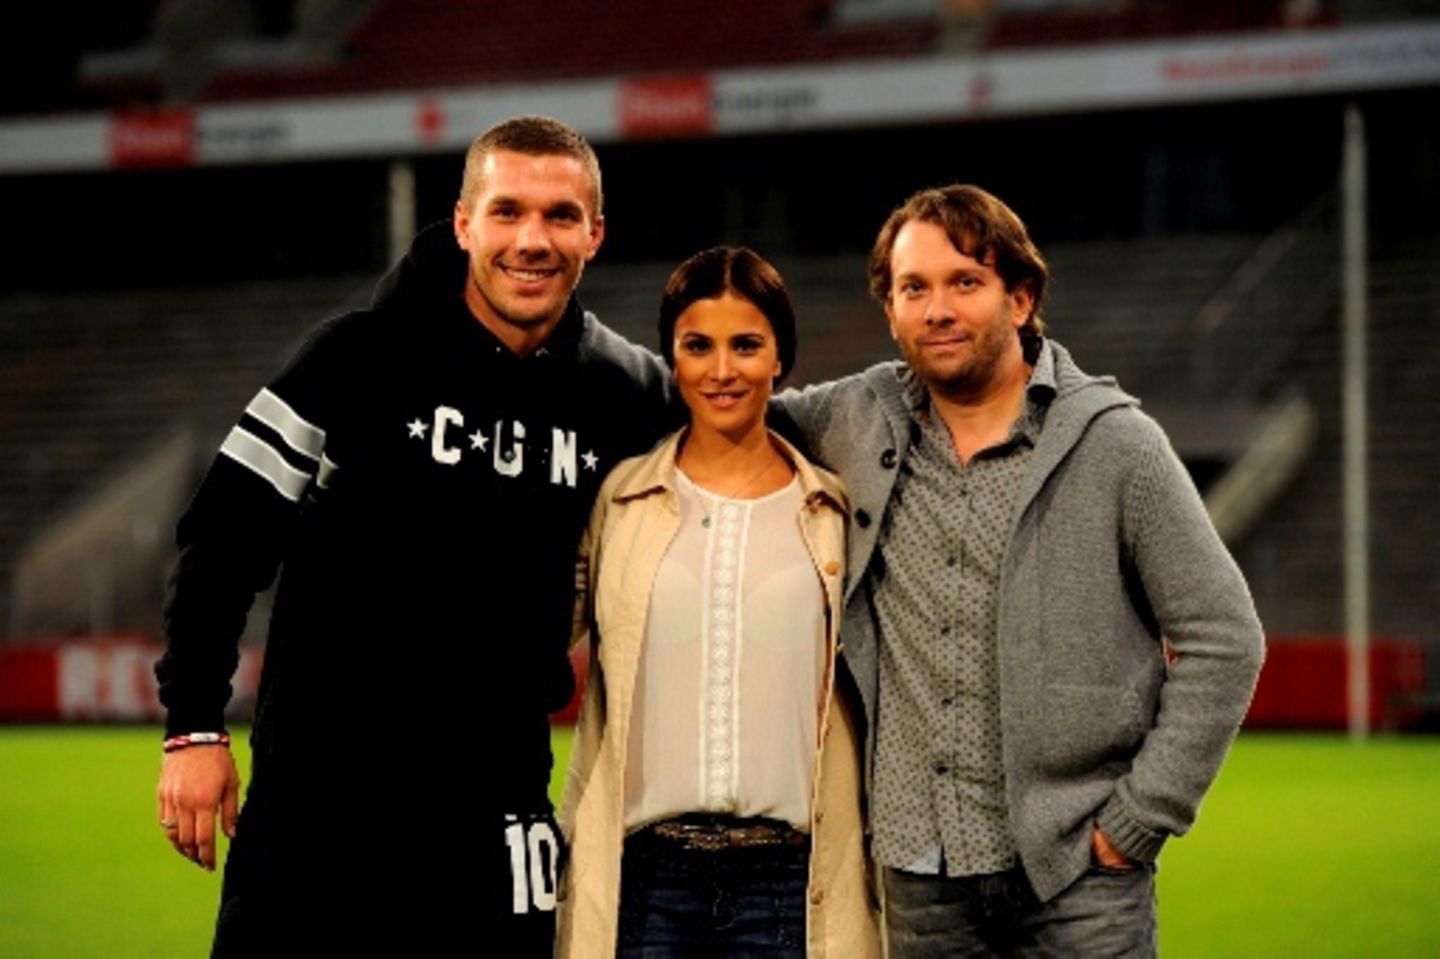 20. Oktober 2014: Für Dreharbeiten zu der Kinokomödie "Macho Man" ist Lukas Podolski ins Stadio des 1. FC Köln zurückgekehrt. Zusammen mit seinen neuen Kollegen Aylin Tezel und Christian Ulmen, die die Hauptfiguren spielen, verwandelt er das Stadion zum Filmset.